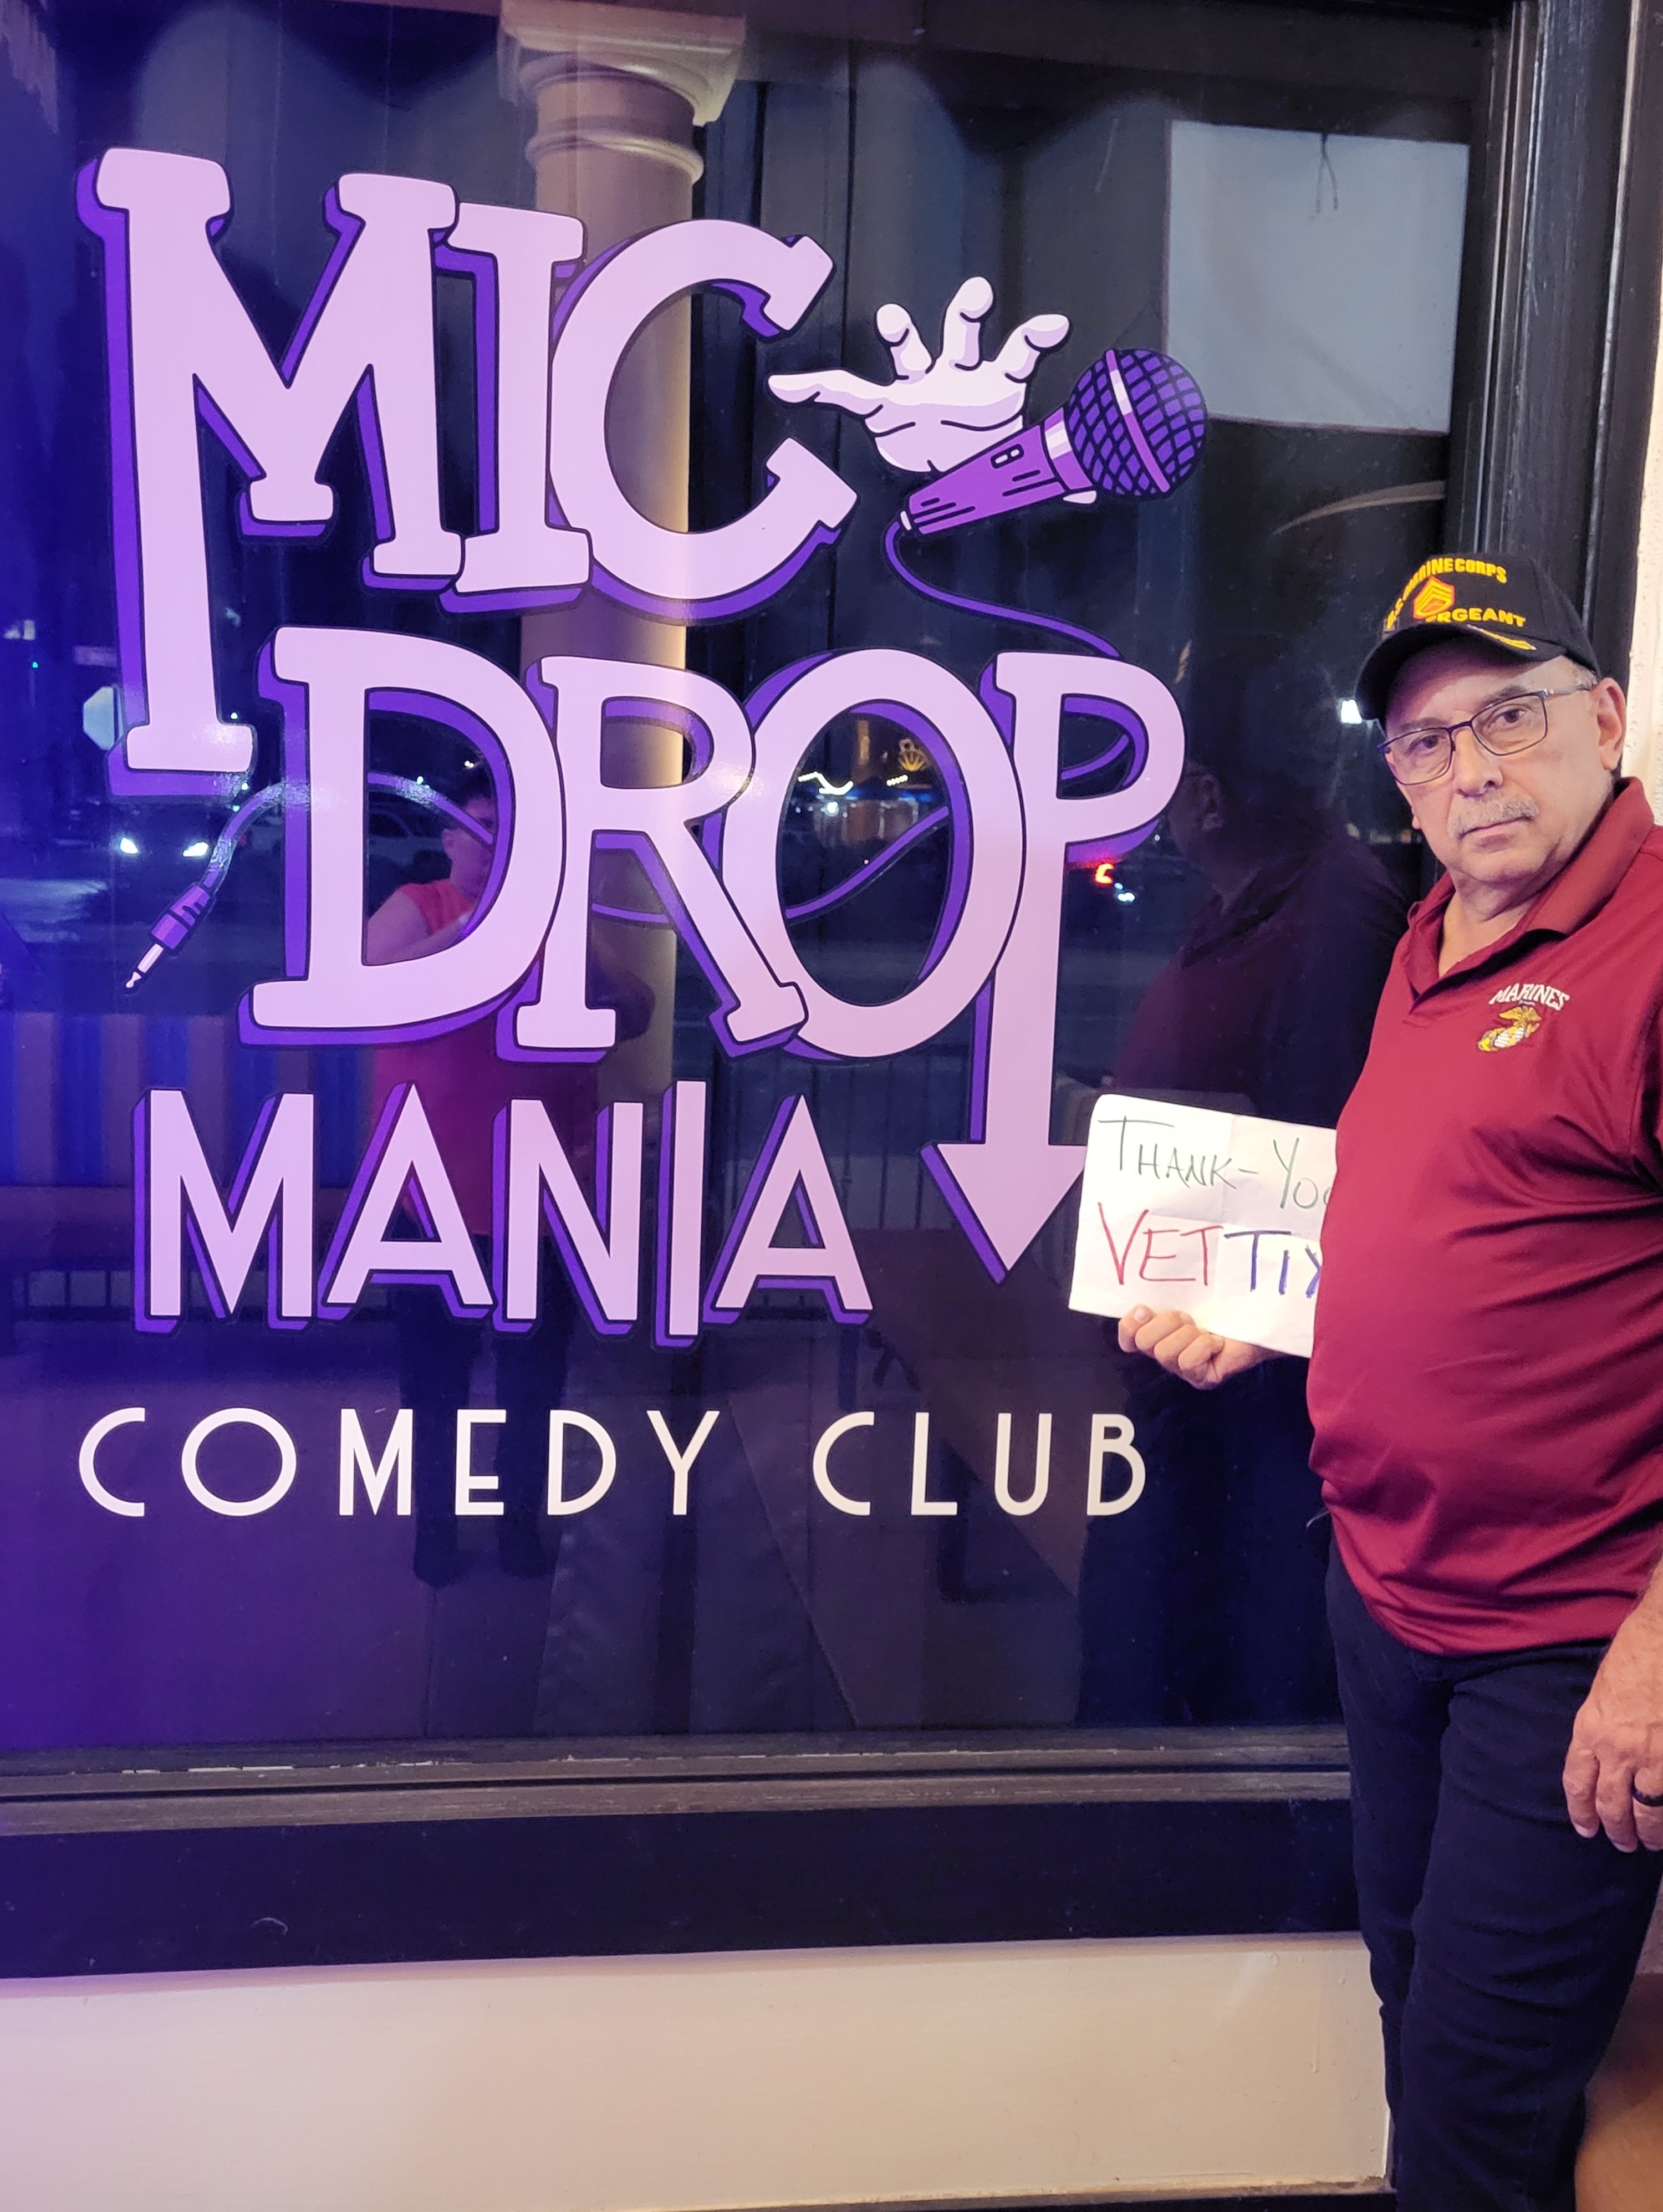 The Drop Comedy Club - The Drop Comedy Club